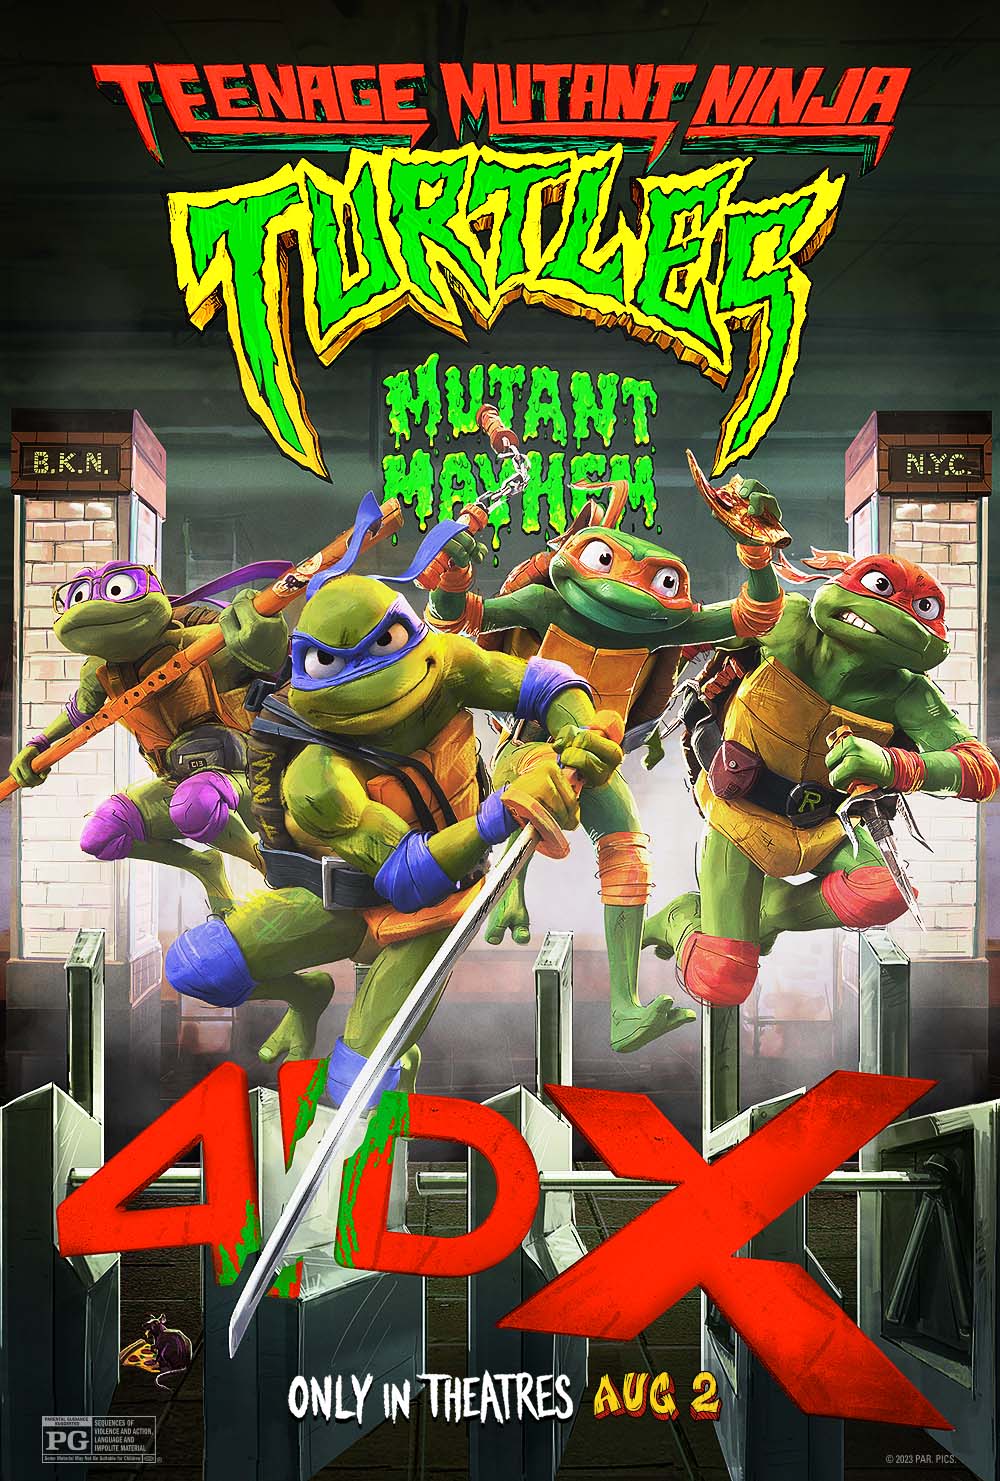 Turtles mutant mayhem. Черепашки-ниндзя погром мутантов. Разгром Черепашки ниндзя.